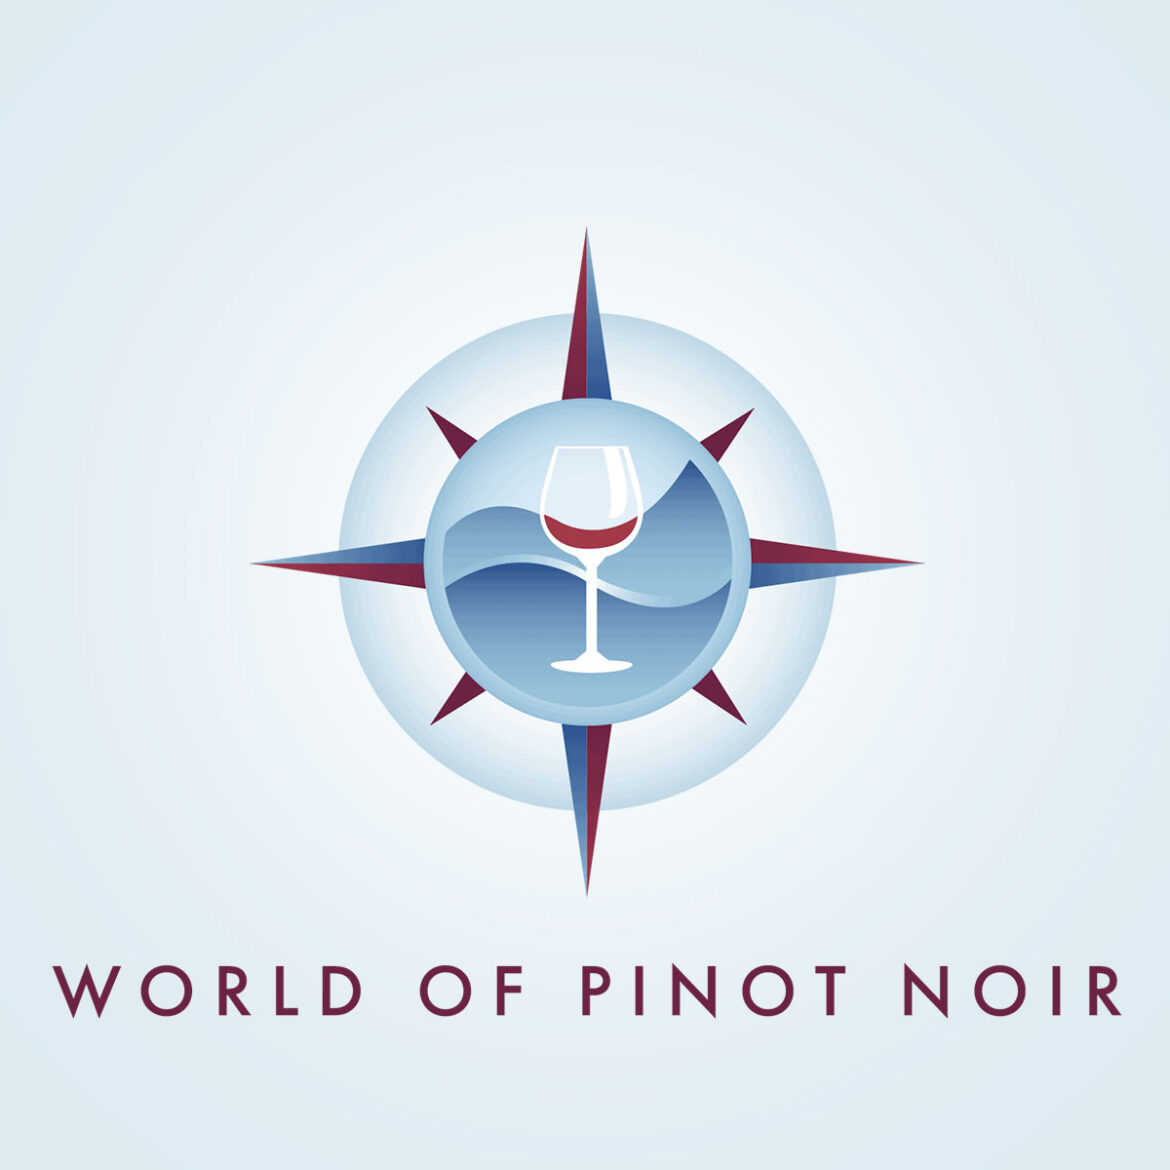 World of Pinot Noir